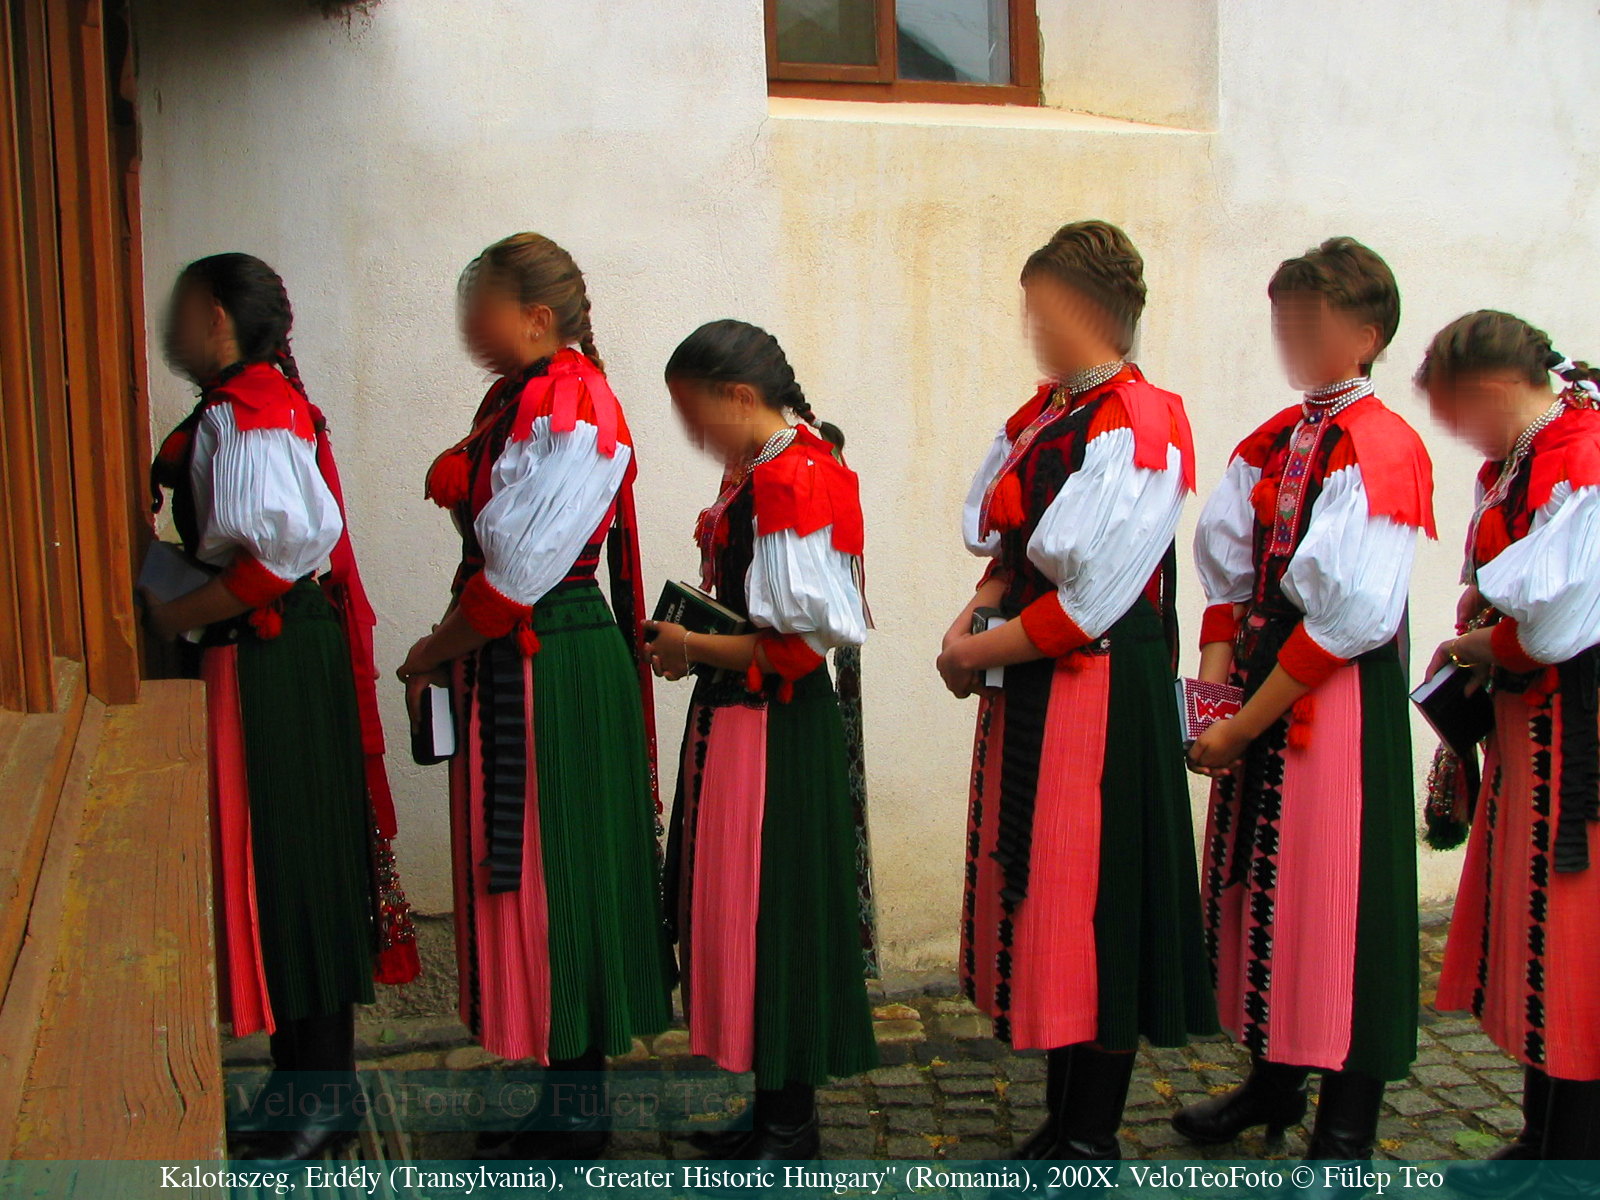 Kalotaszegi népviseletbe öltözött lányok sorakoznak konfirmálásra egy református templom kapujánál, valahol Kalotaszegen, a kétezres évek elején. A népviselet itt még az élet része, míg nálunk már múzeum és színpad.